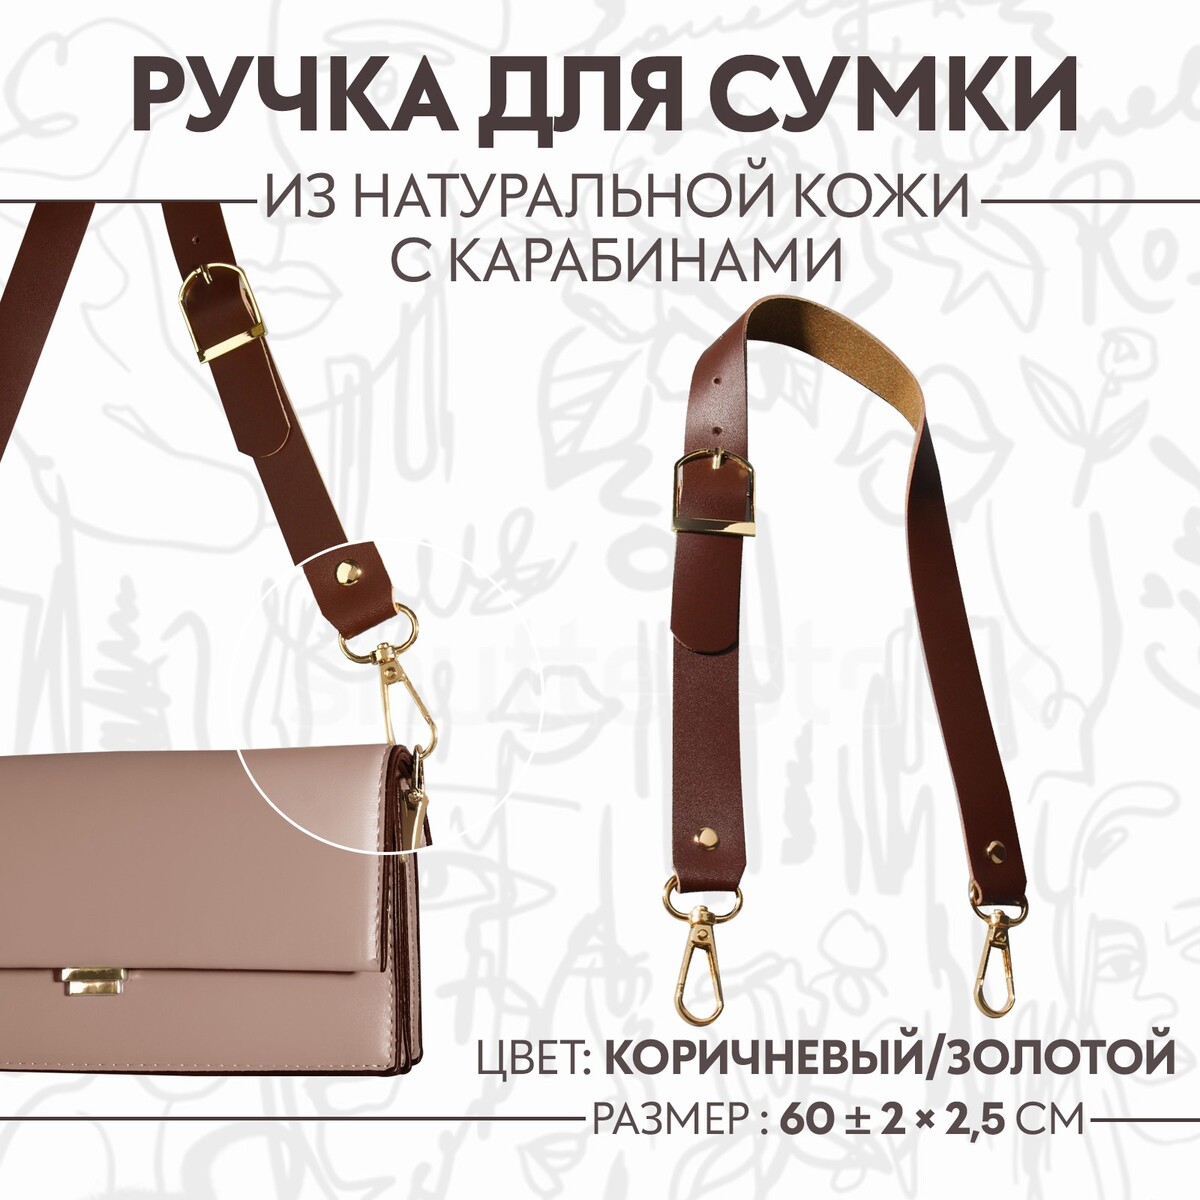 Ручка для сумки из натуральной кожи, регулируемая, с карабинами, 60 ± 2 см × 2,5 см, цвет коричневый/золотой